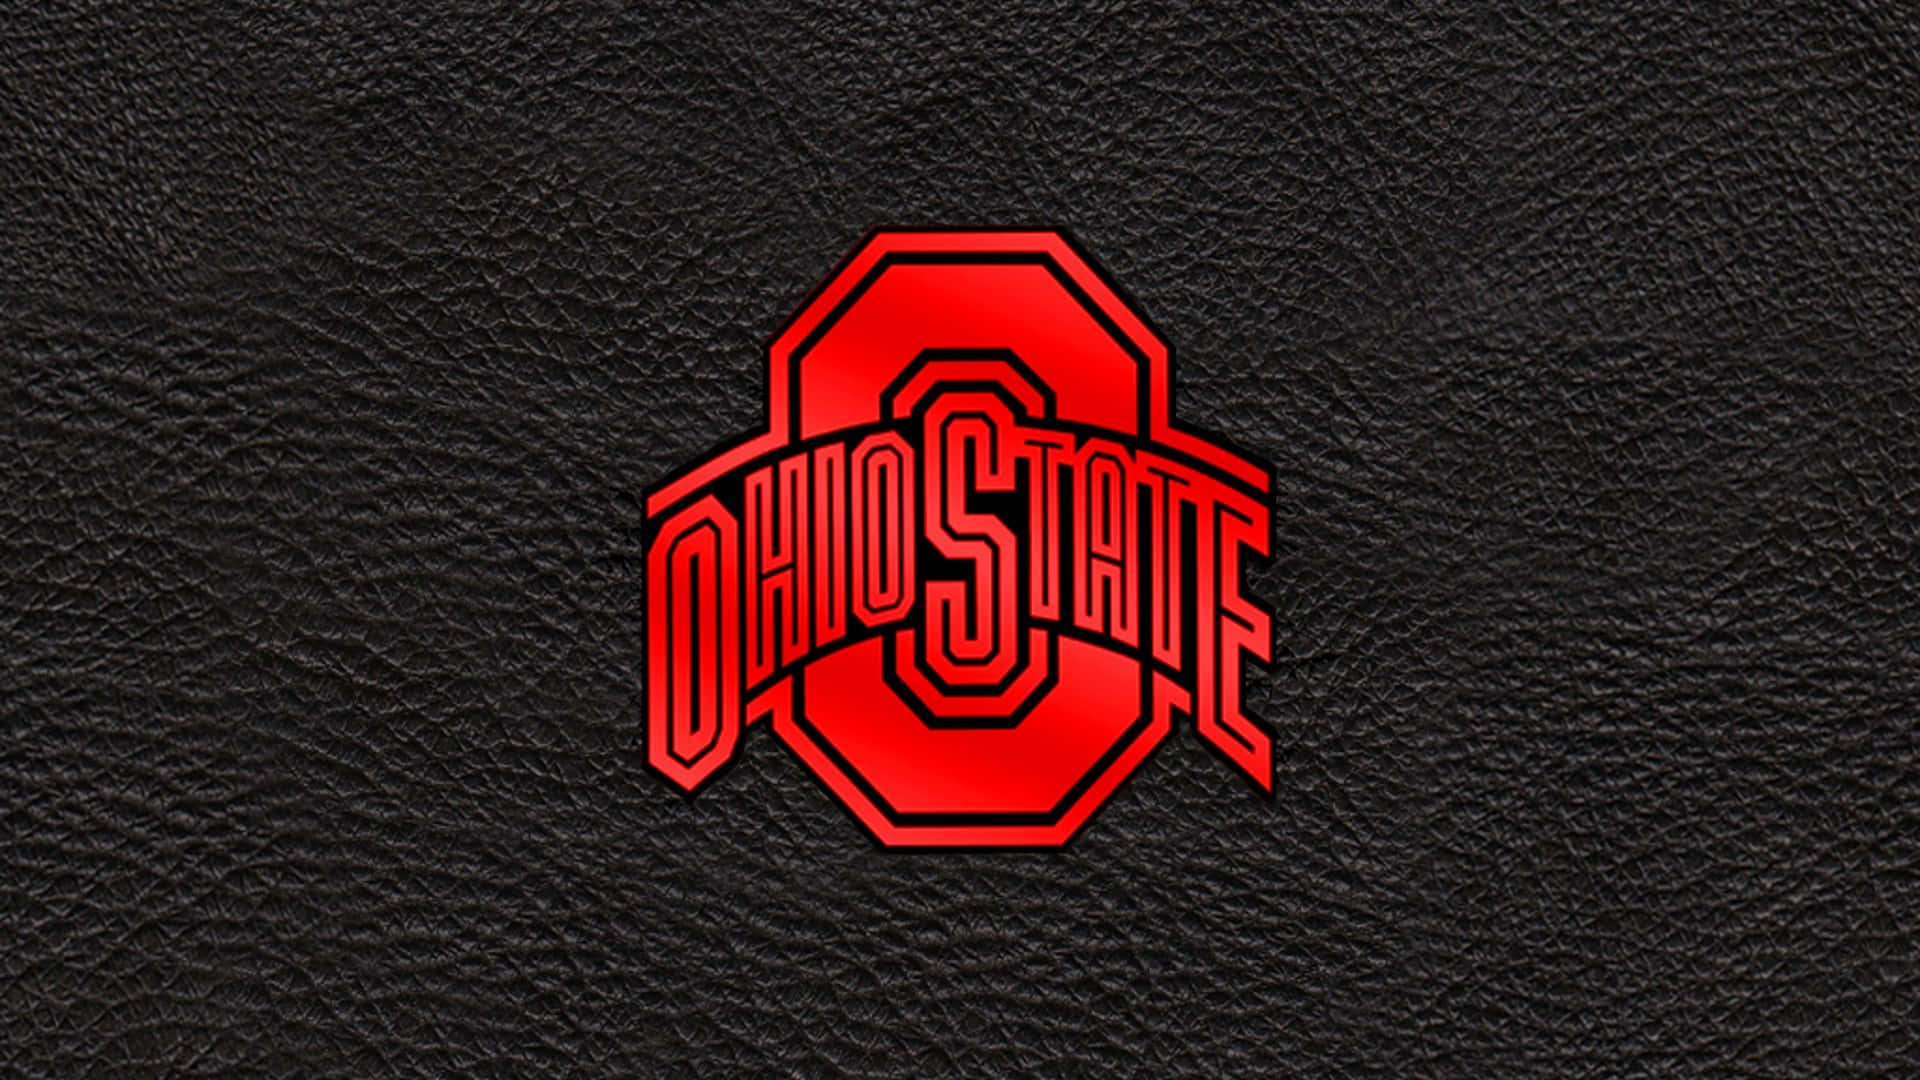 Ohiostate Logotyp På En Svart Läderbakgrund. Wallpaper